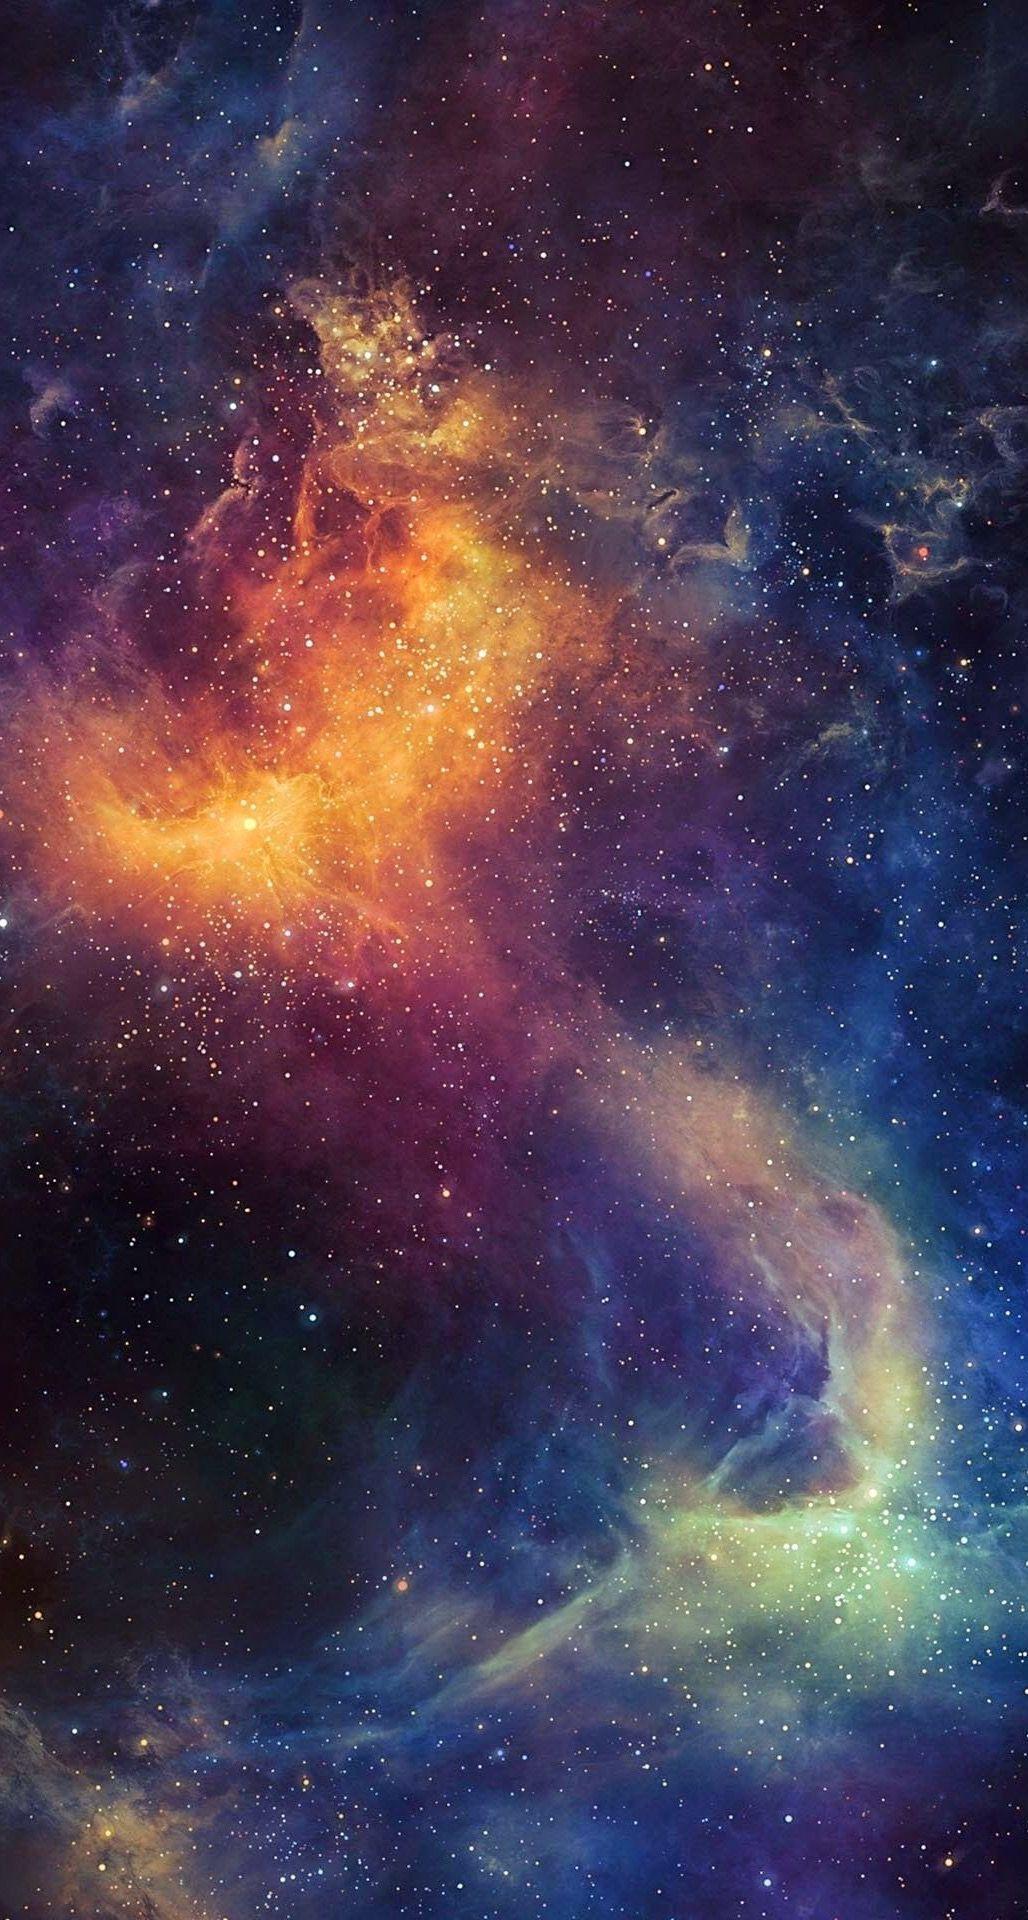 Space iPhone Wallpaper. Space iphone wallpaper, Galaxy